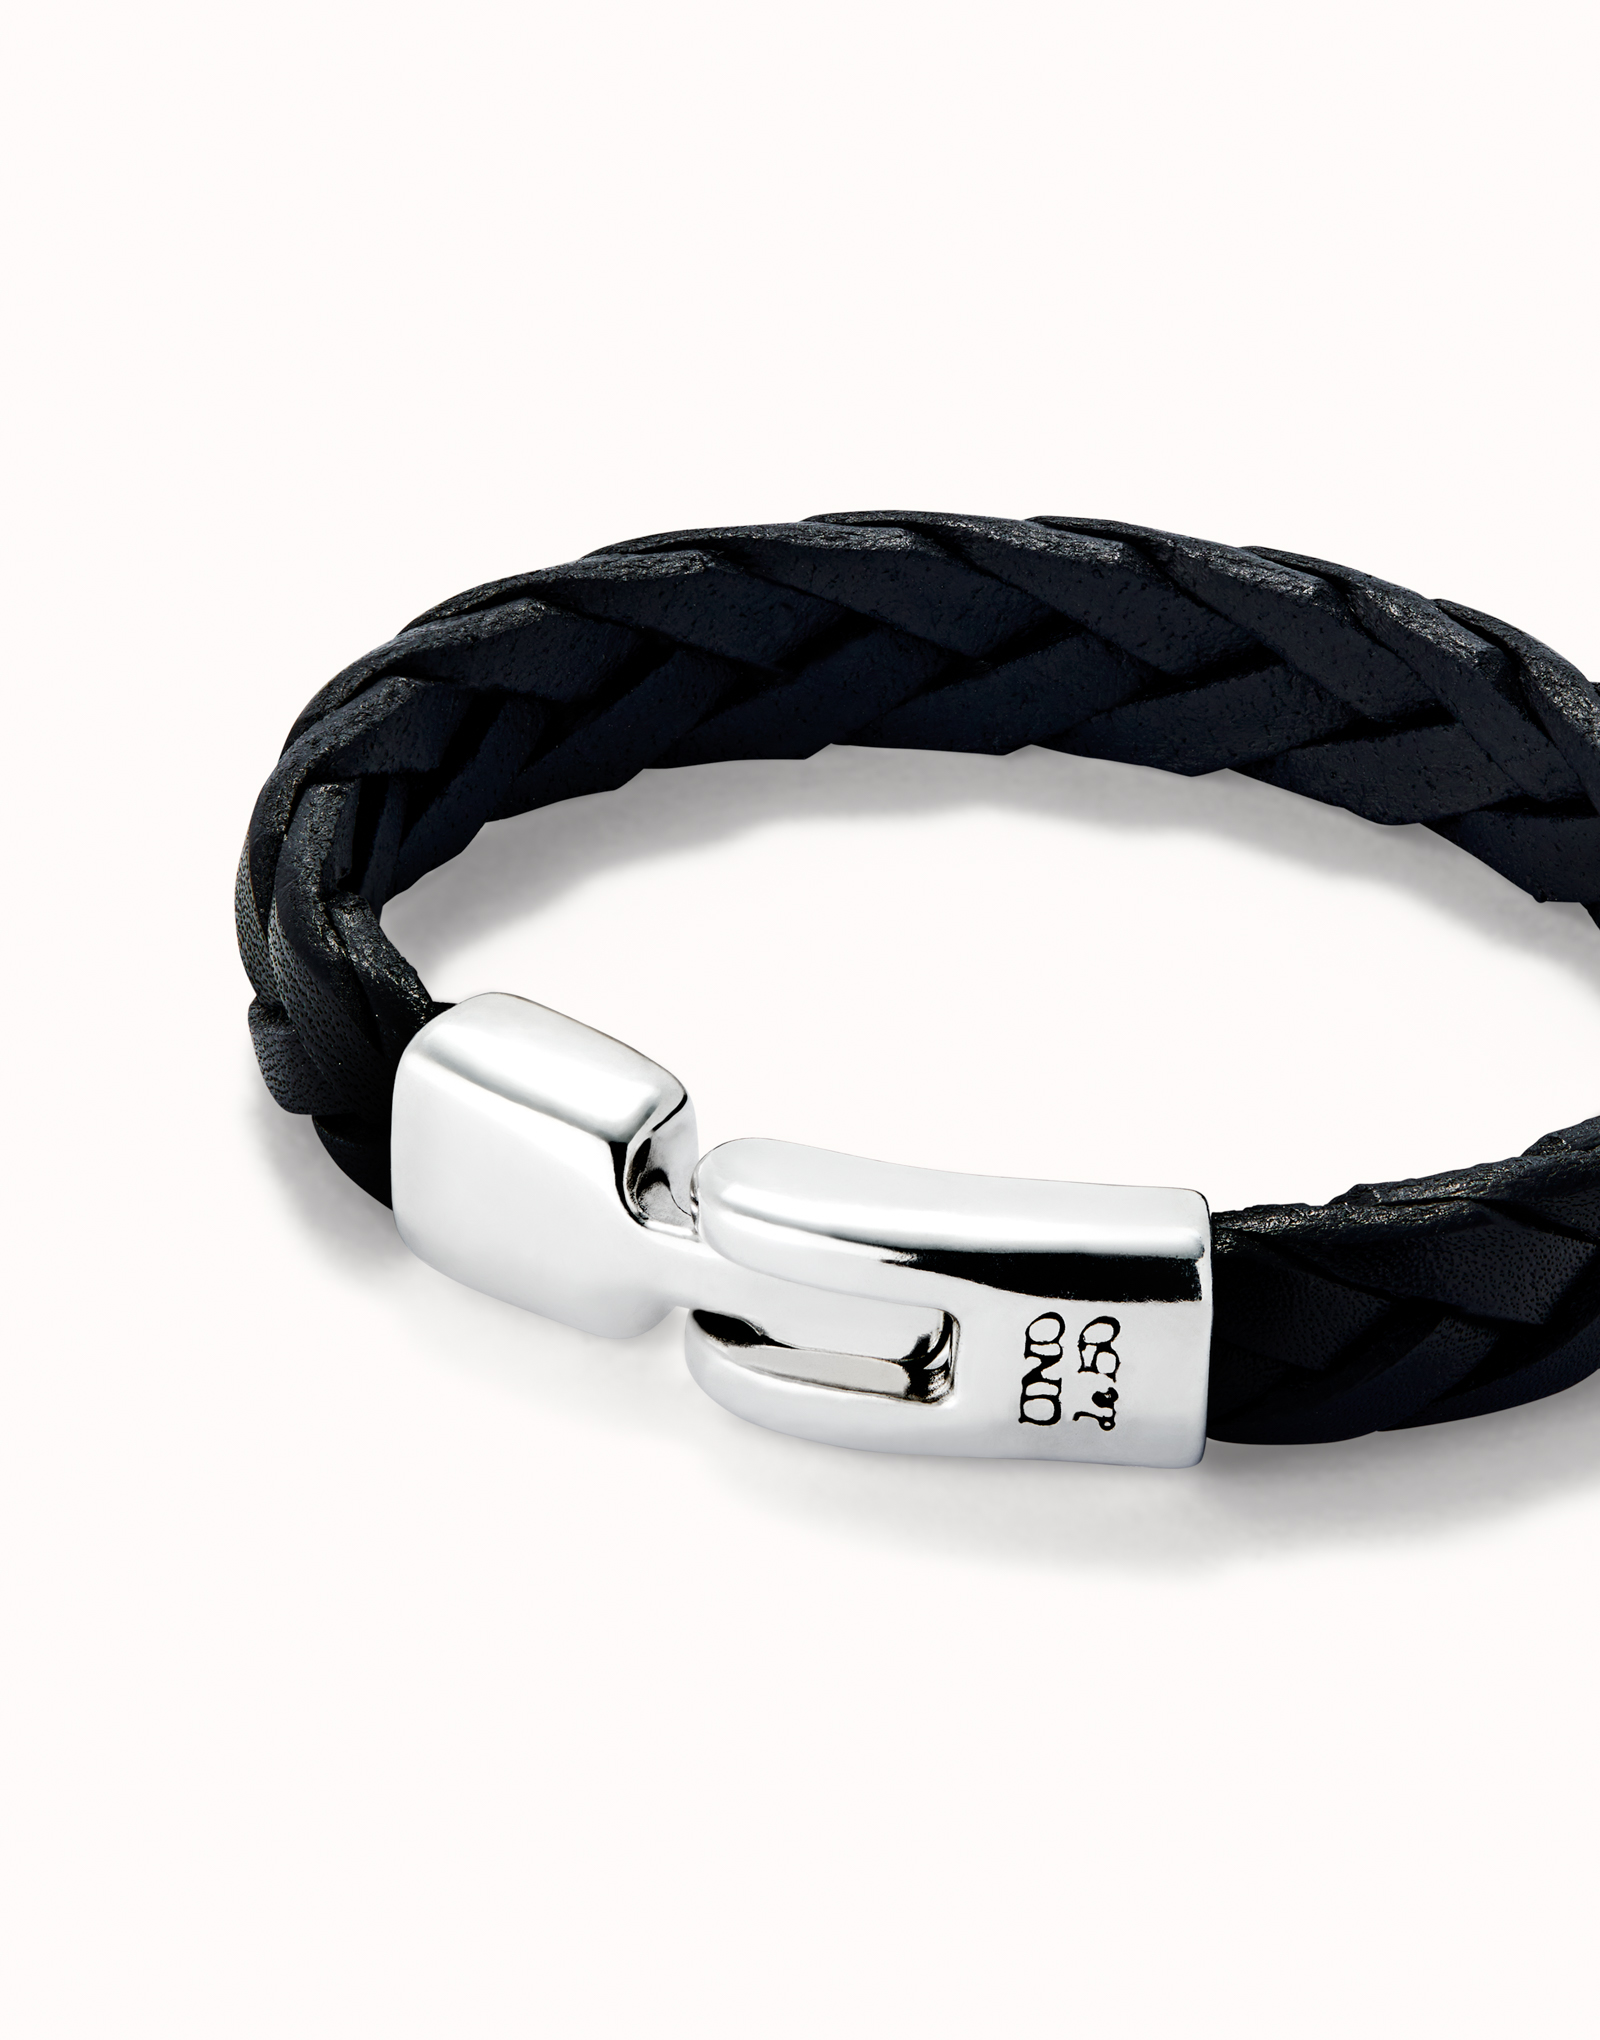 Bracelet en cuir tressé couleur noire plaqué argent, Argent, large image number null